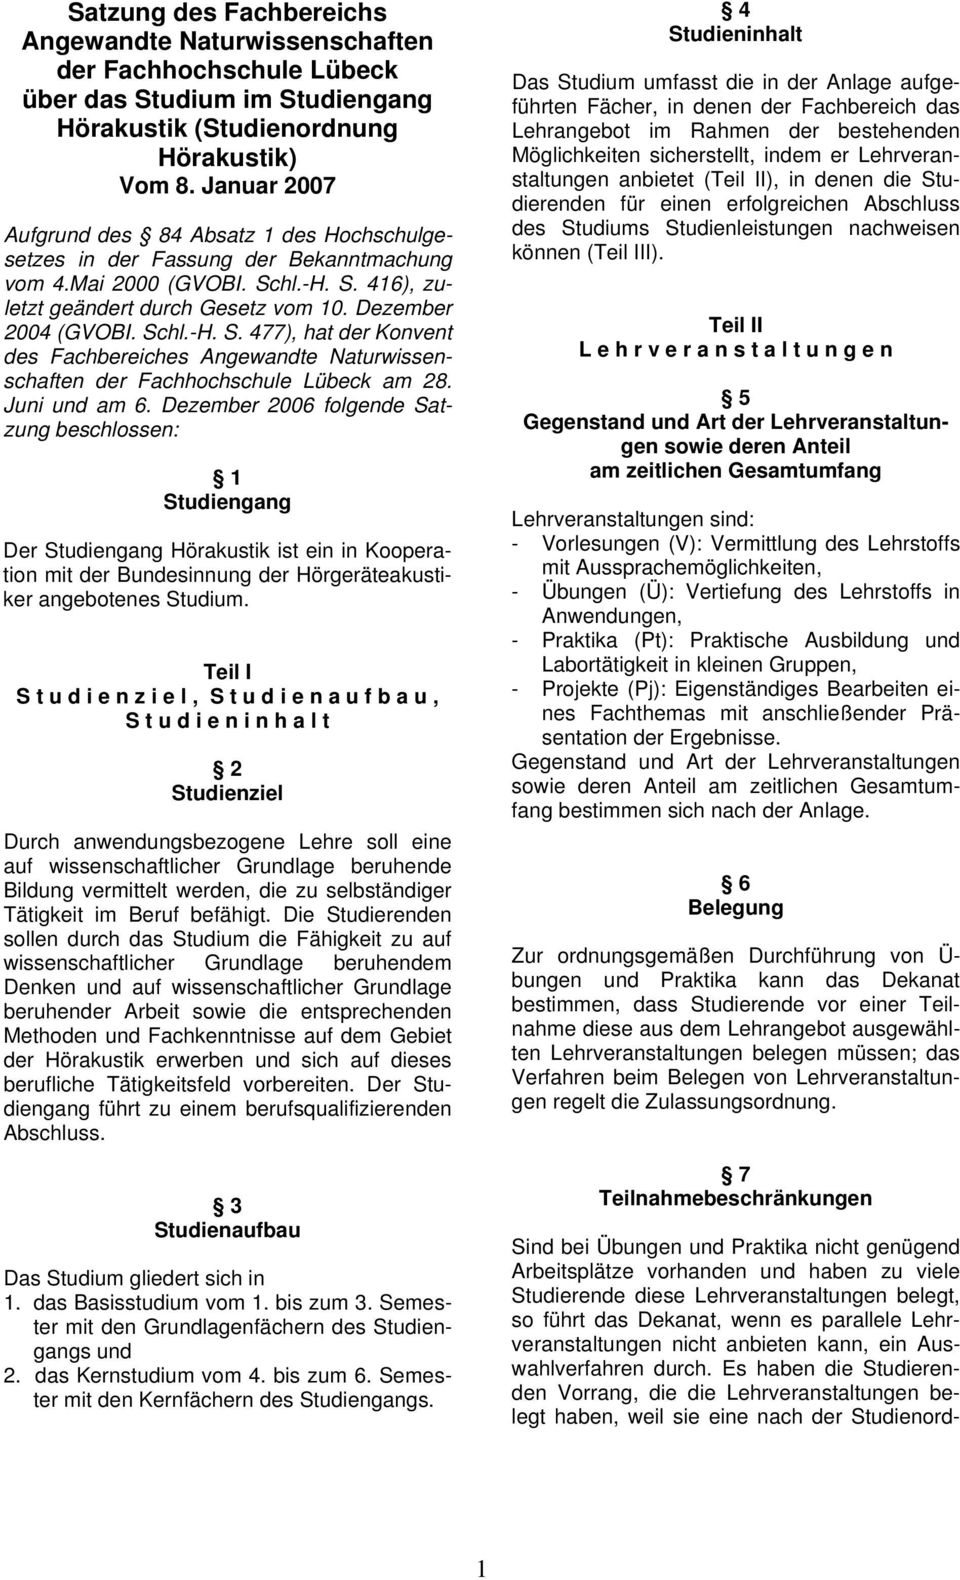 hl.-H. S. 416), zuletzt geändert durch Gesetz vom 10. Dezember 2004 (GVOBI. Schl.-H. S. 477), hat der Konvent des Fachbereiches Angewandte Naturwissenschaften der Fachhochschule Lübeck am 28.